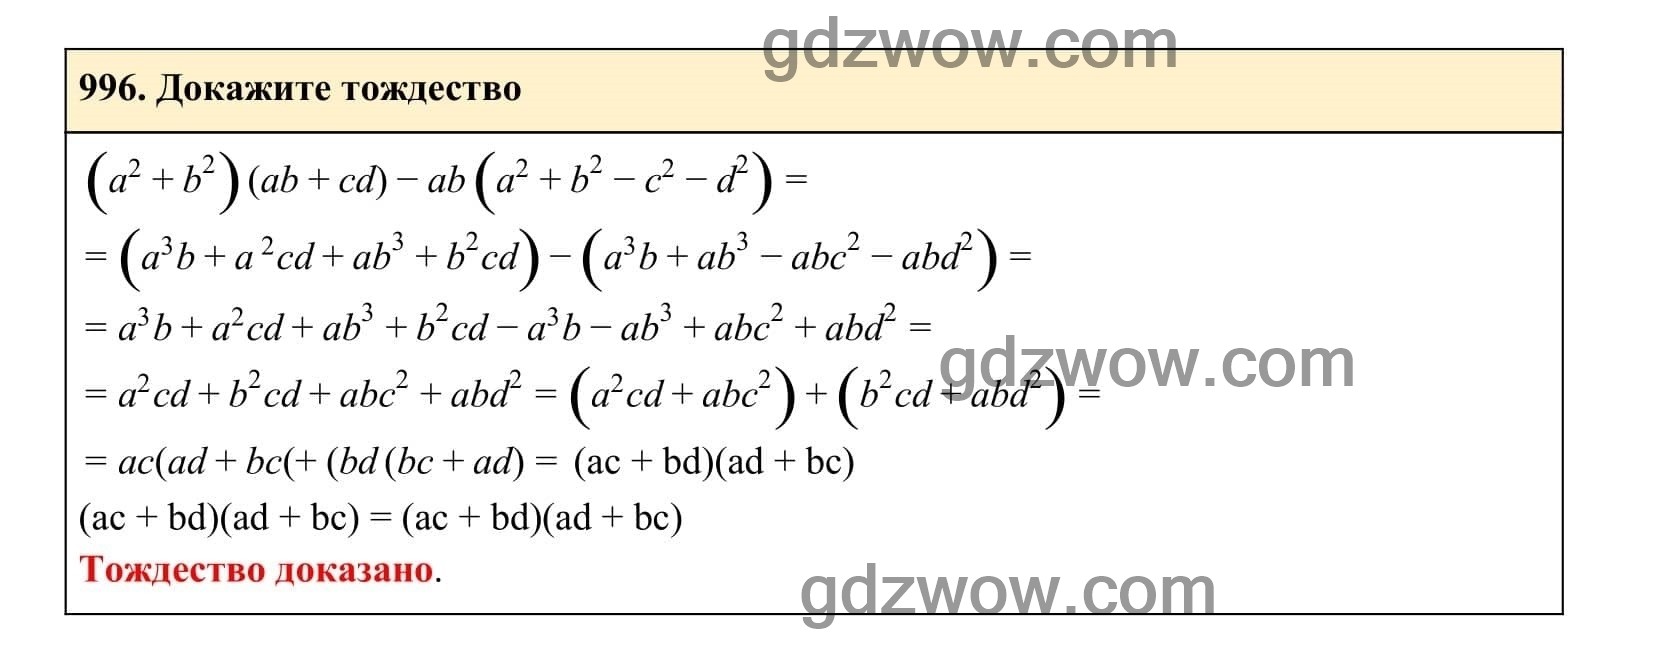 Упражнение 996 - ГДЗ по Алгебре 7 класс Учебник Макарычев (решебник) - GDZwow